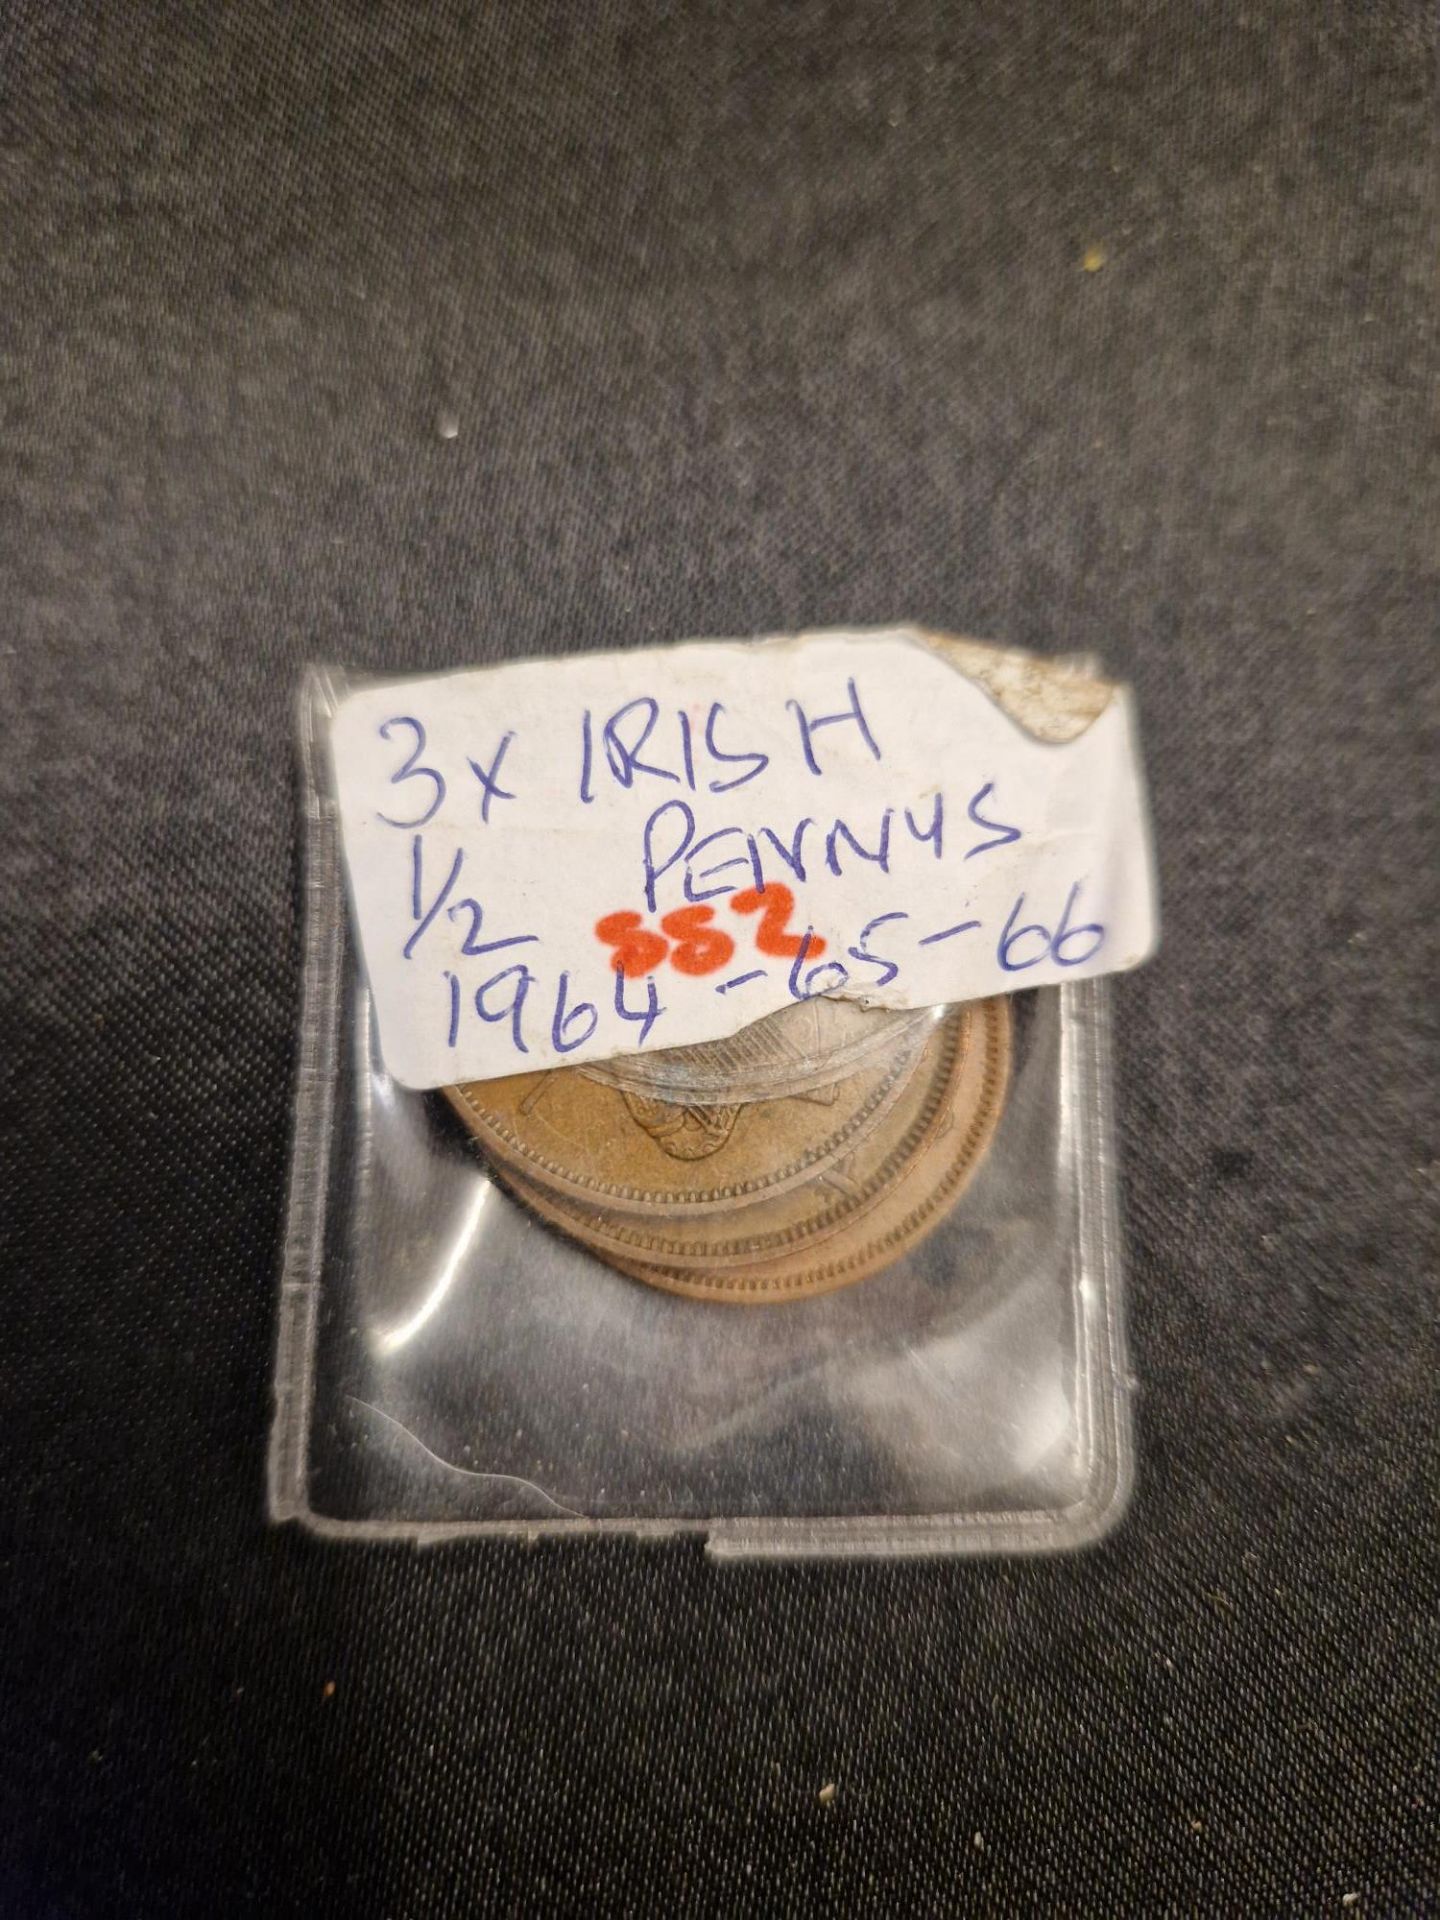 3x irish 1/2 pennys 1964-65-66